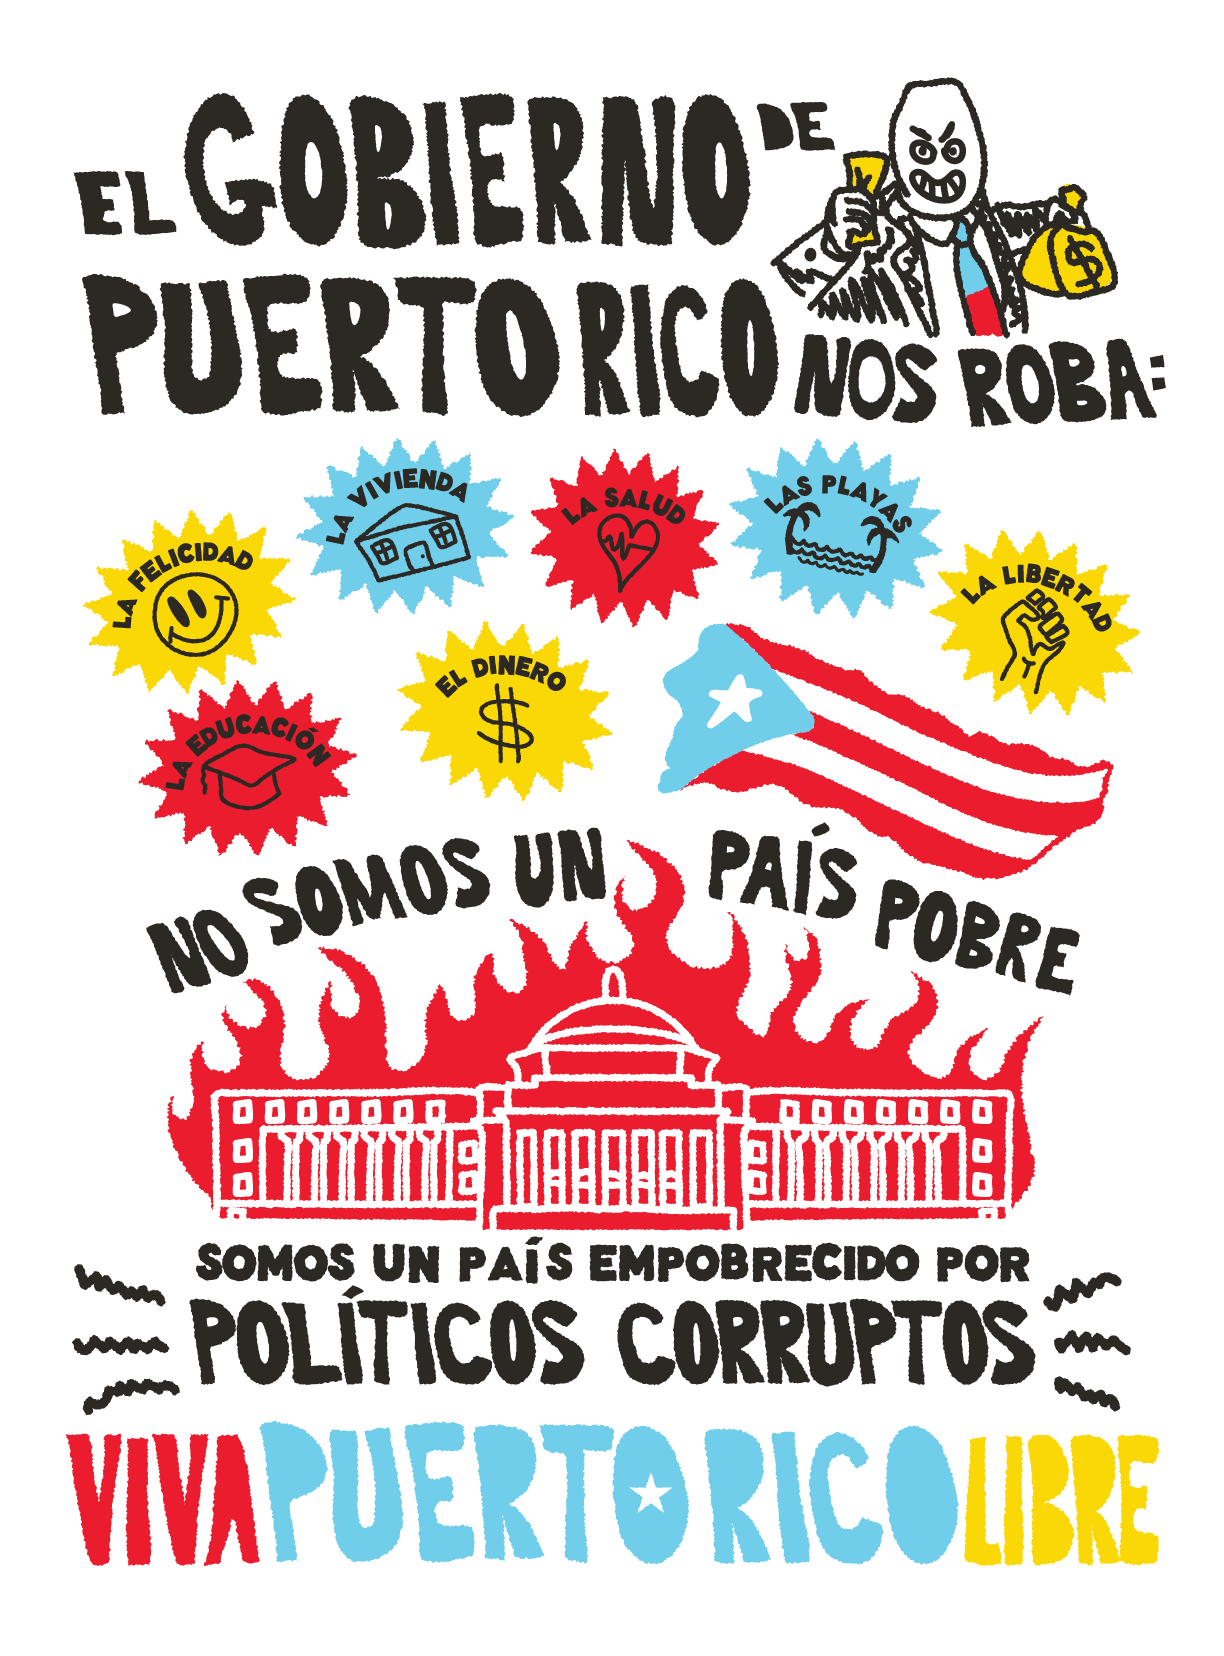 Gobierno de Puerto Rico Art Print